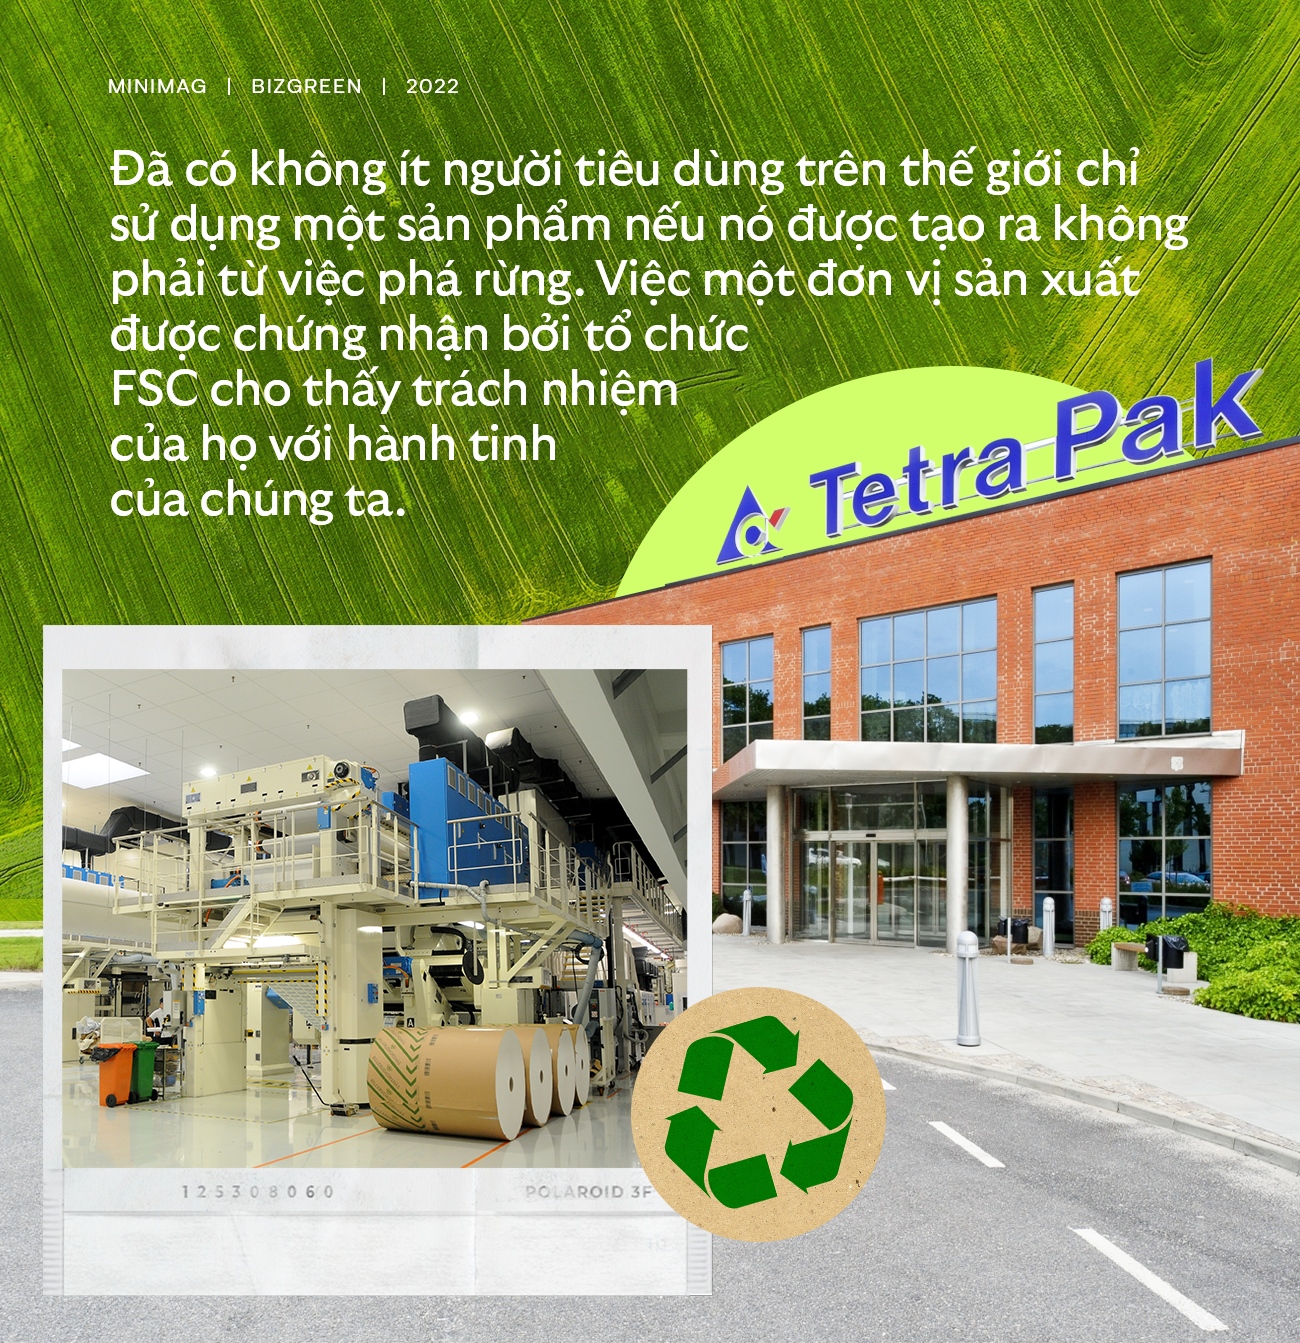 Chuyện về những hộp giấy ‘quốc dân’ Tetra Pak: Ra đời không phải từ việc phá rừng bừa bãi, được tái chế thành sản phẩm sinh thái có ích - Ảnh 3.